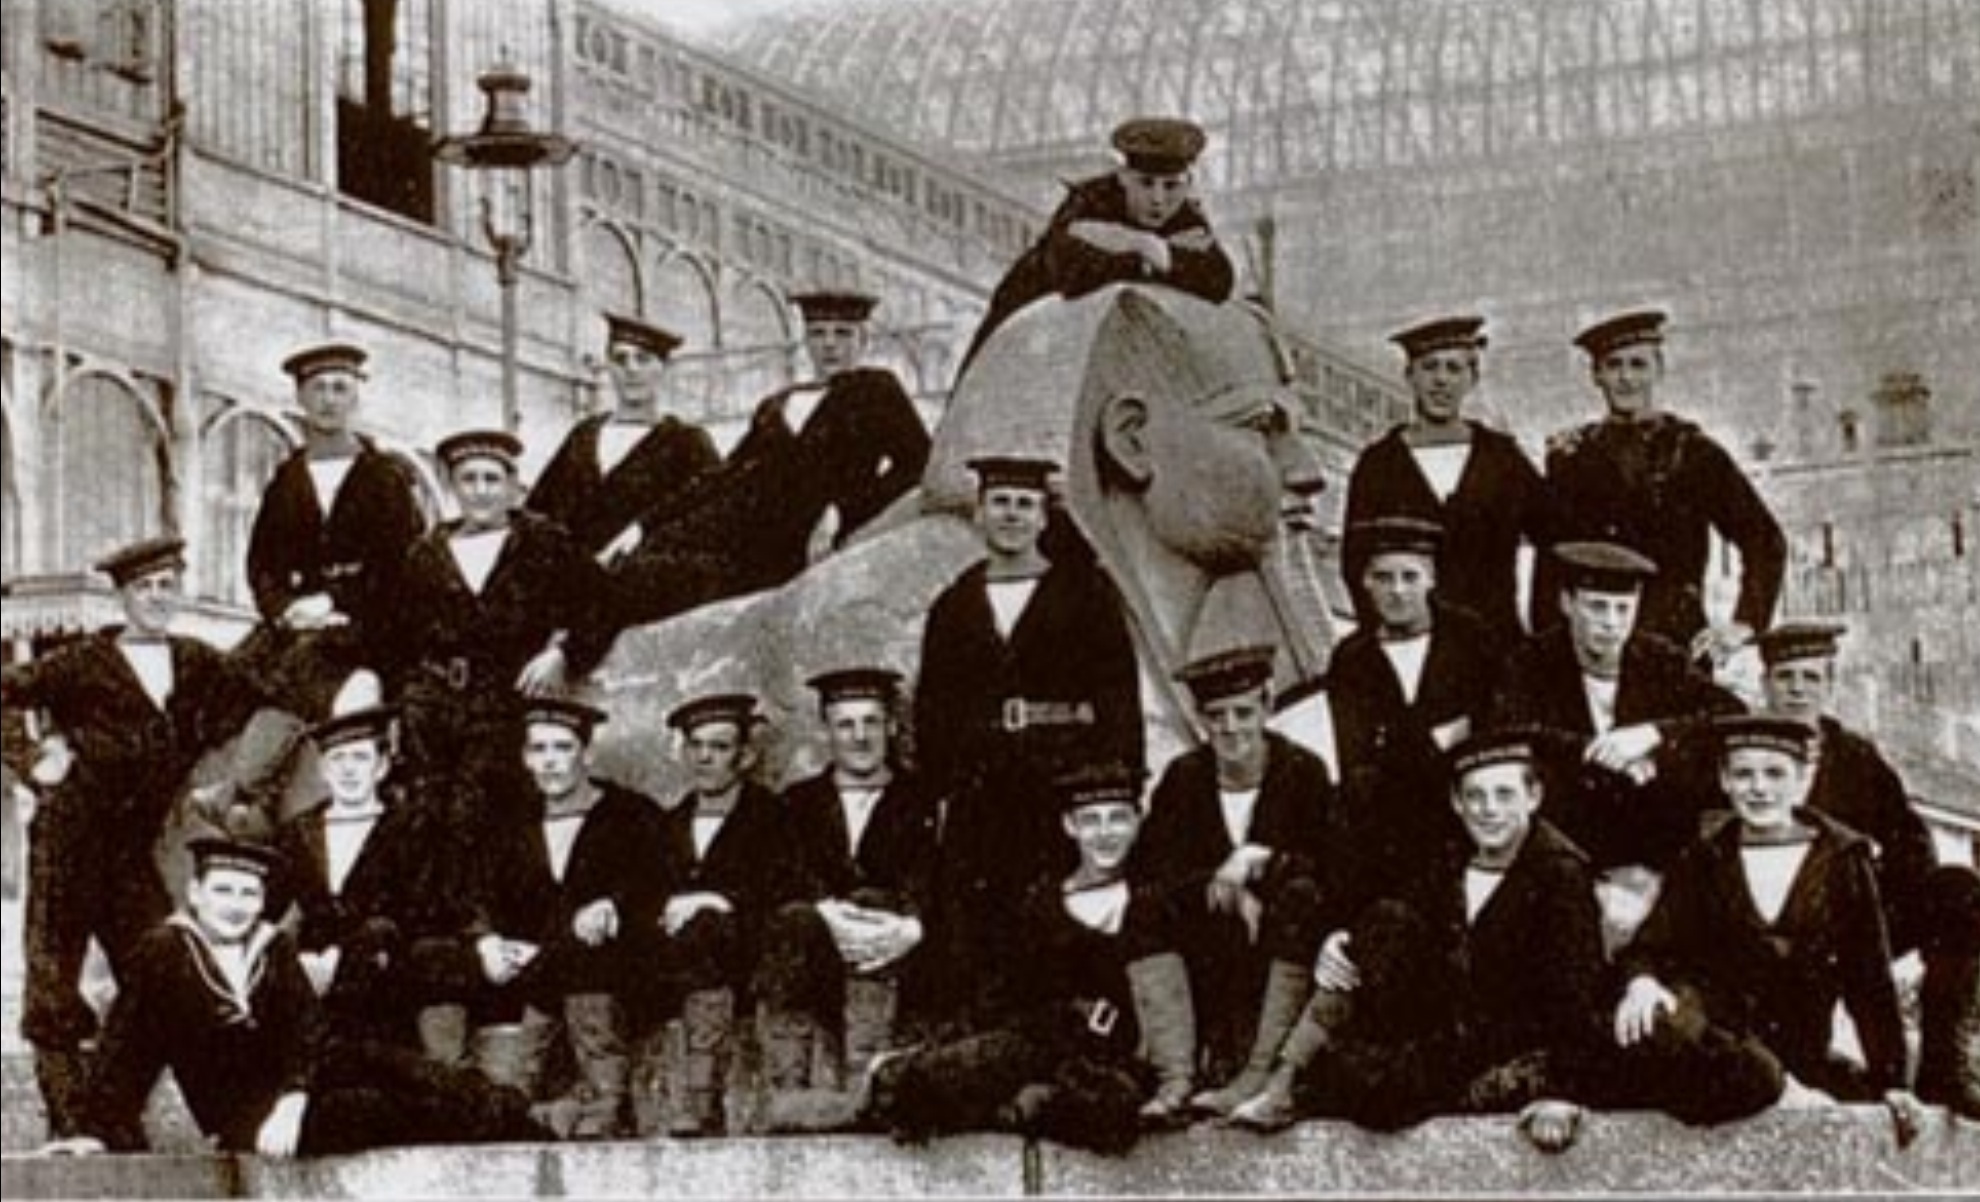 Royal Naval Division .info Souvenir photograph at HMS Crystal Palace